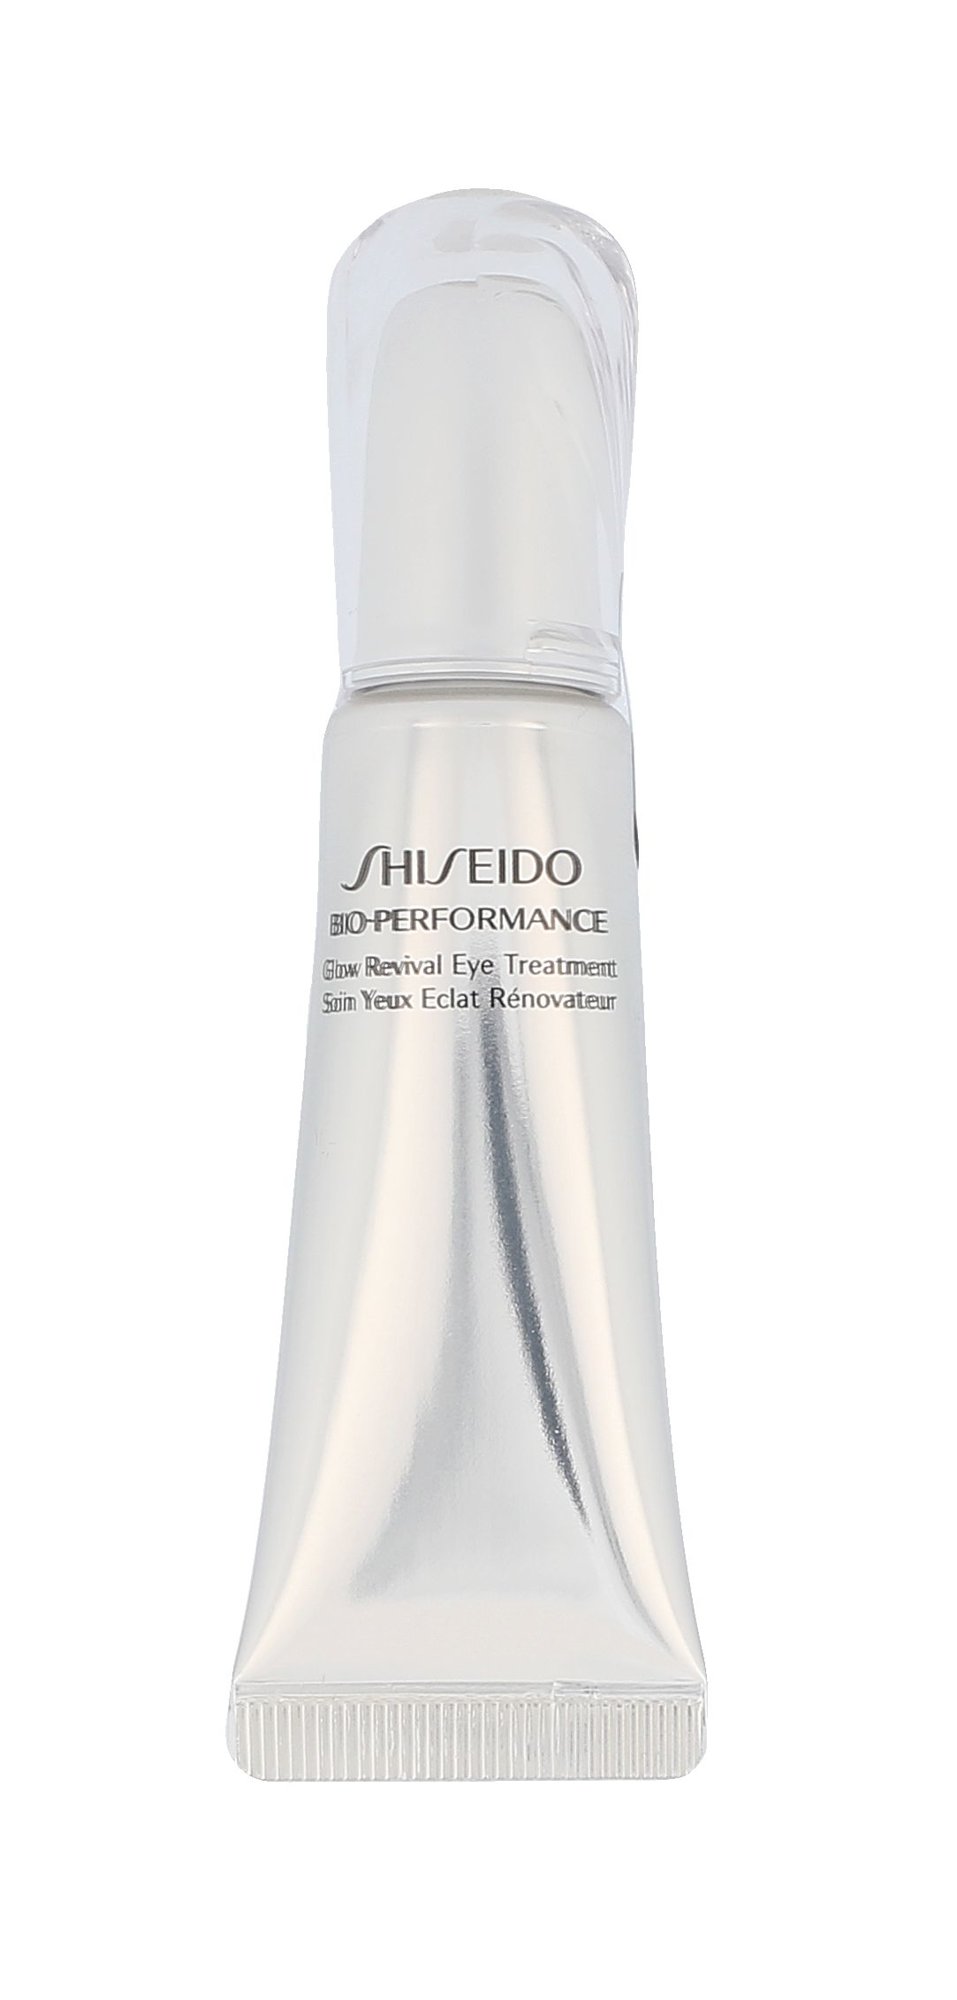 Shiseido Bio-Performance Glow Revival Eye Treatment 15ml paakių kremas (Pažeista pakuotė)